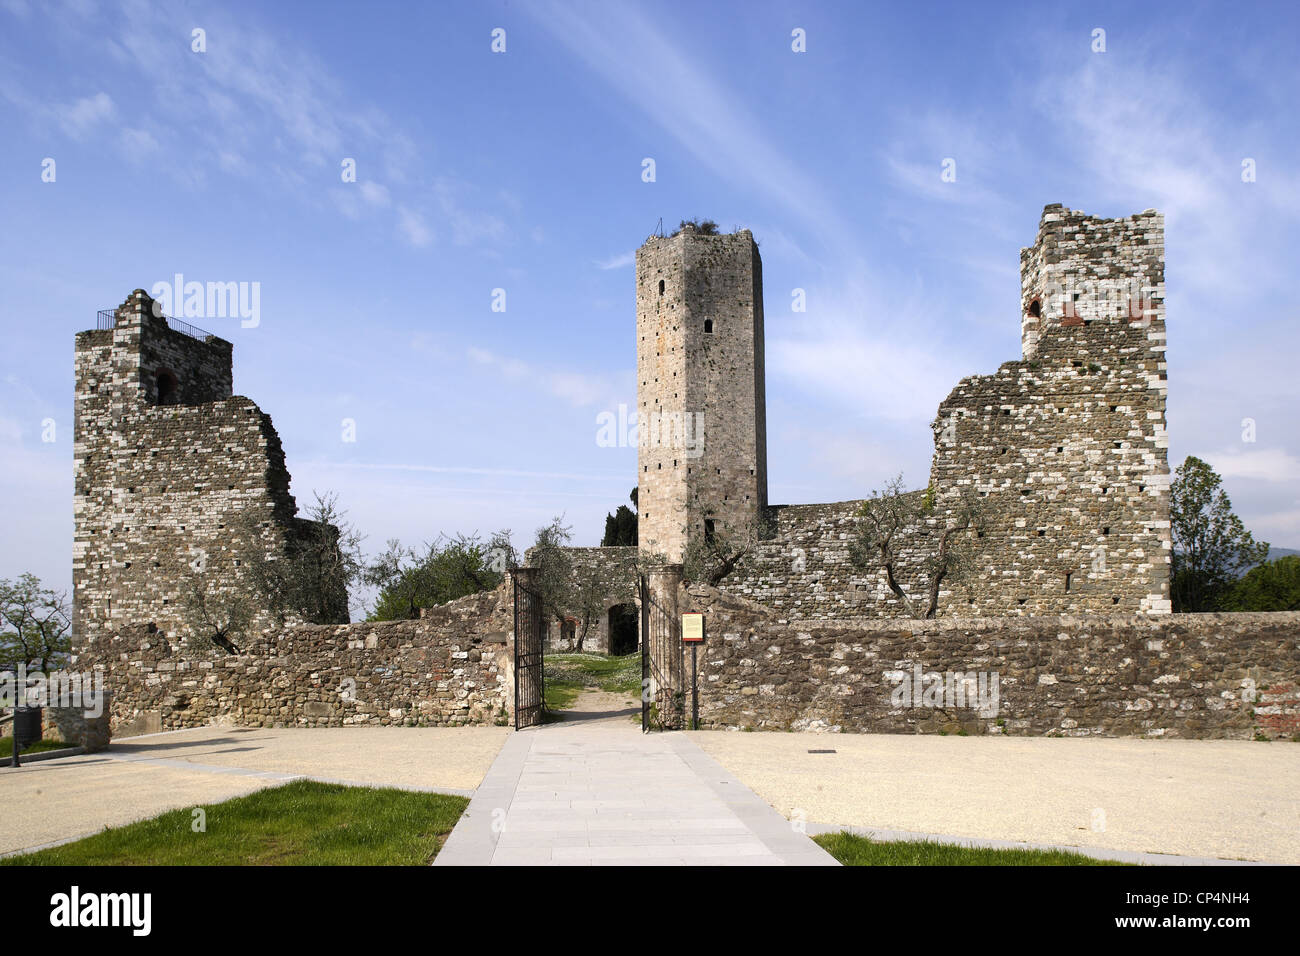 La nouvelle forteresse avec la tour hexagonale, 14e siècle. Serravalle Pistoiese, province de Pistoia, Toscane, Italie. Banque D'Images